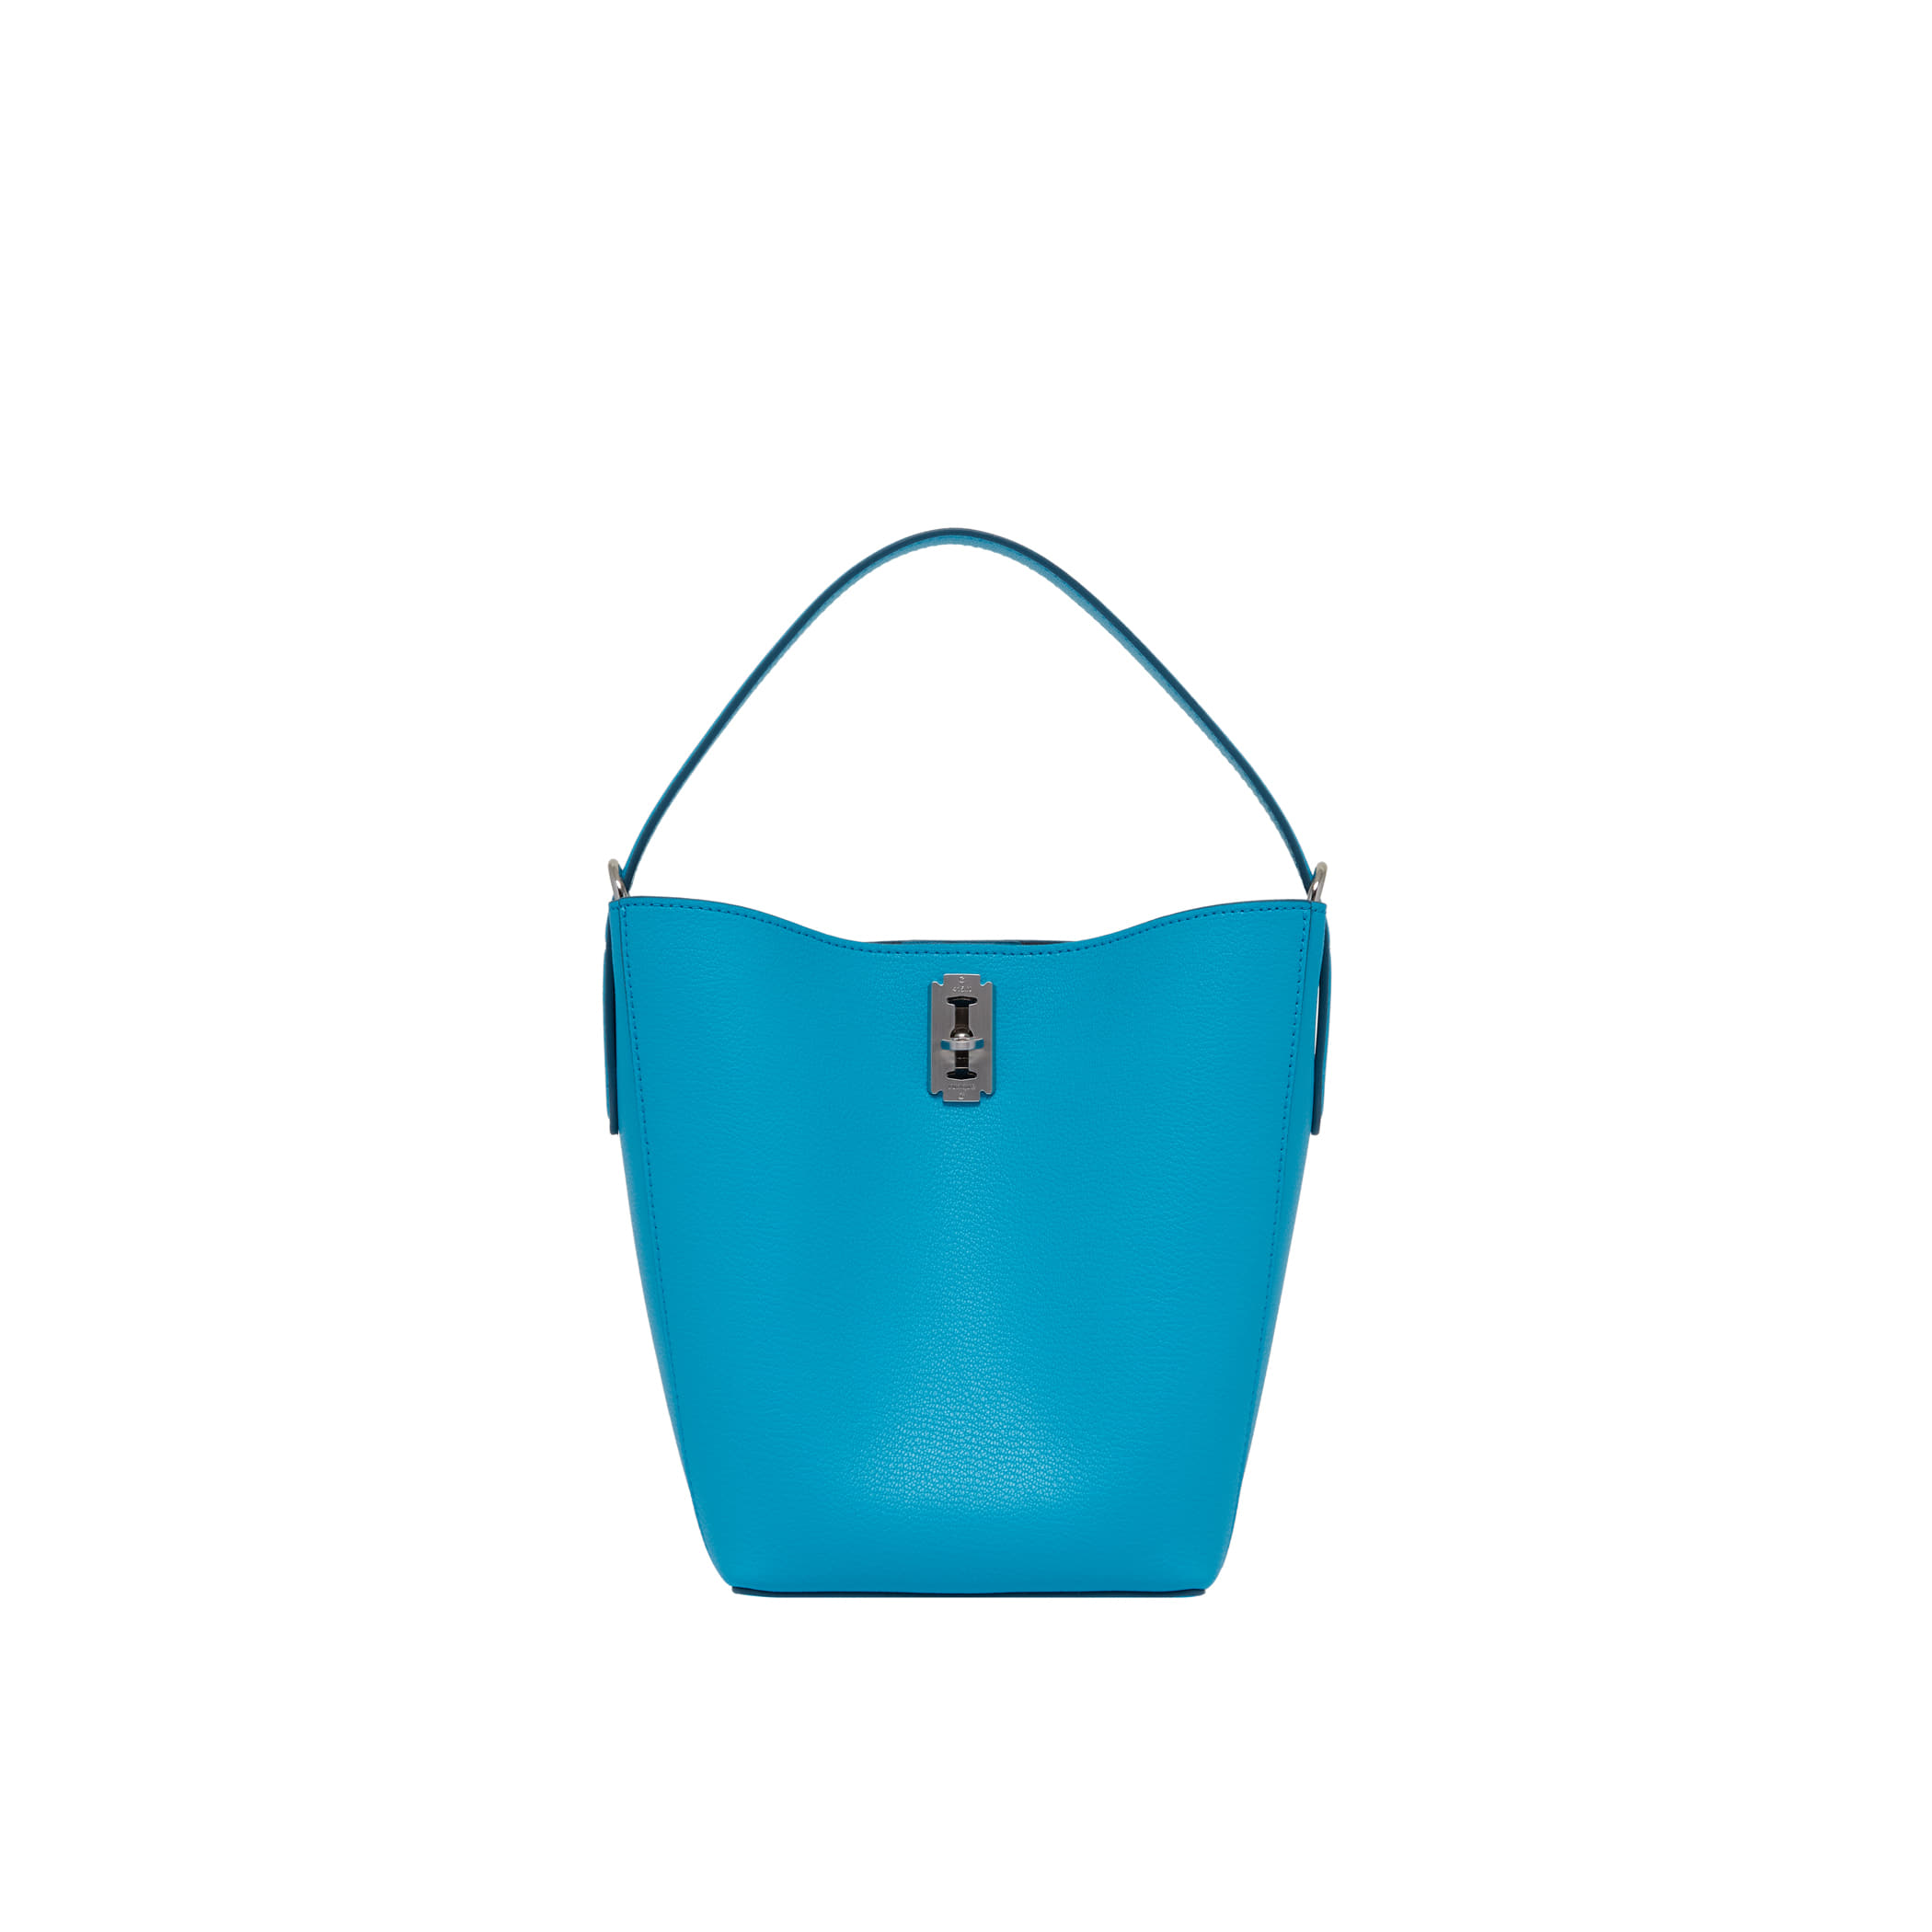 [아울렛] Perfec Basket Hobo S (퍼펙 바스켓 호보 스몰) Turquoise blue